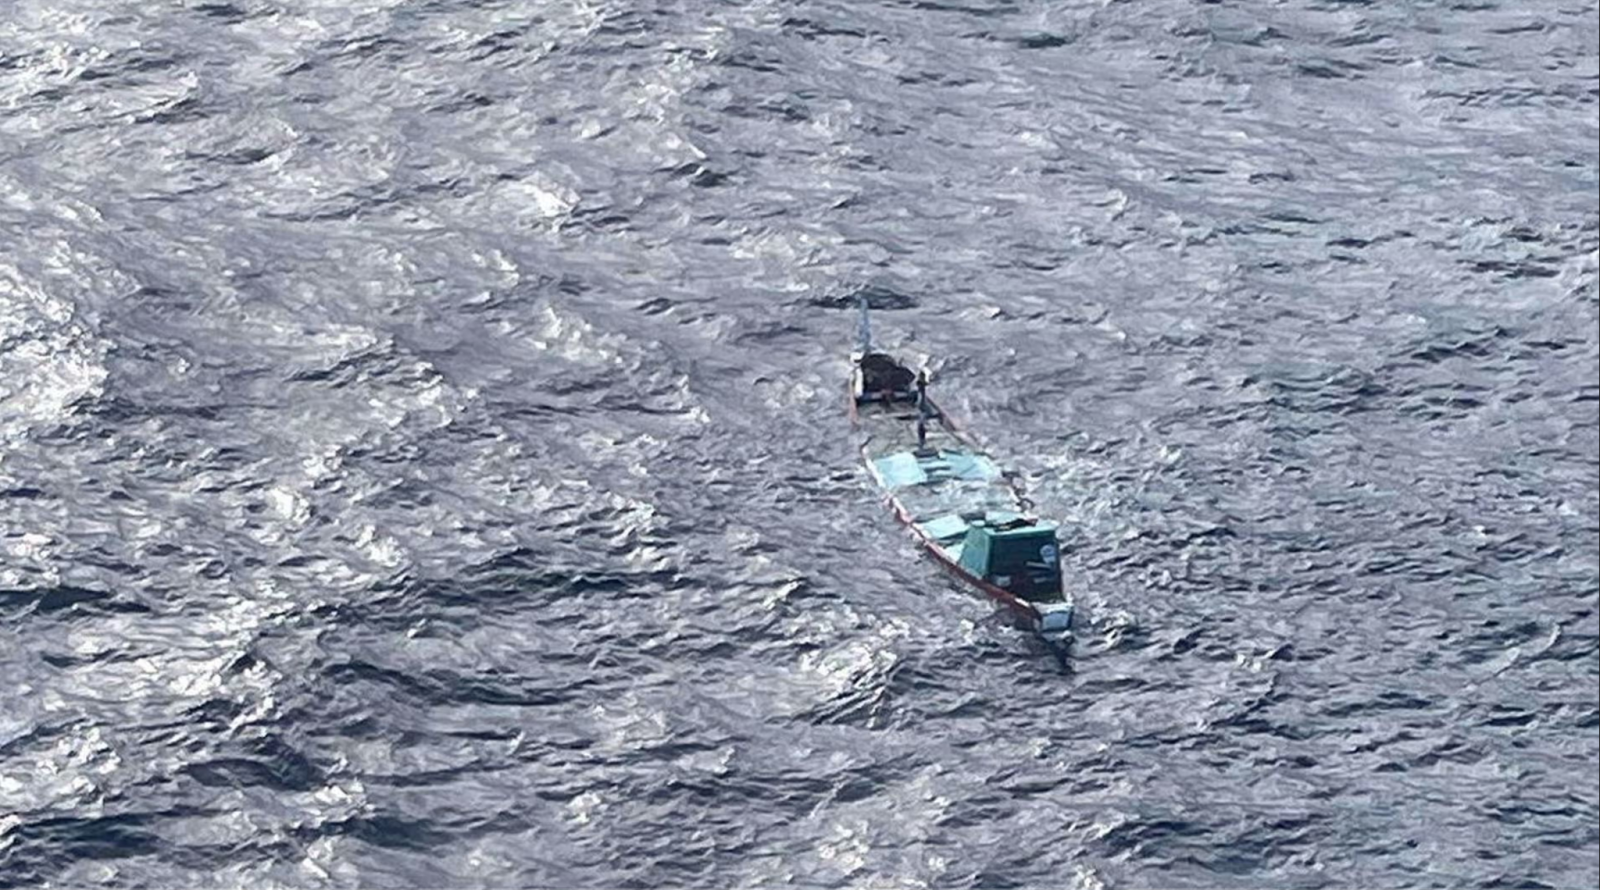 îles Canaries : chavirement d’une pirogue partie de Mbour, plus de 50 disparus !